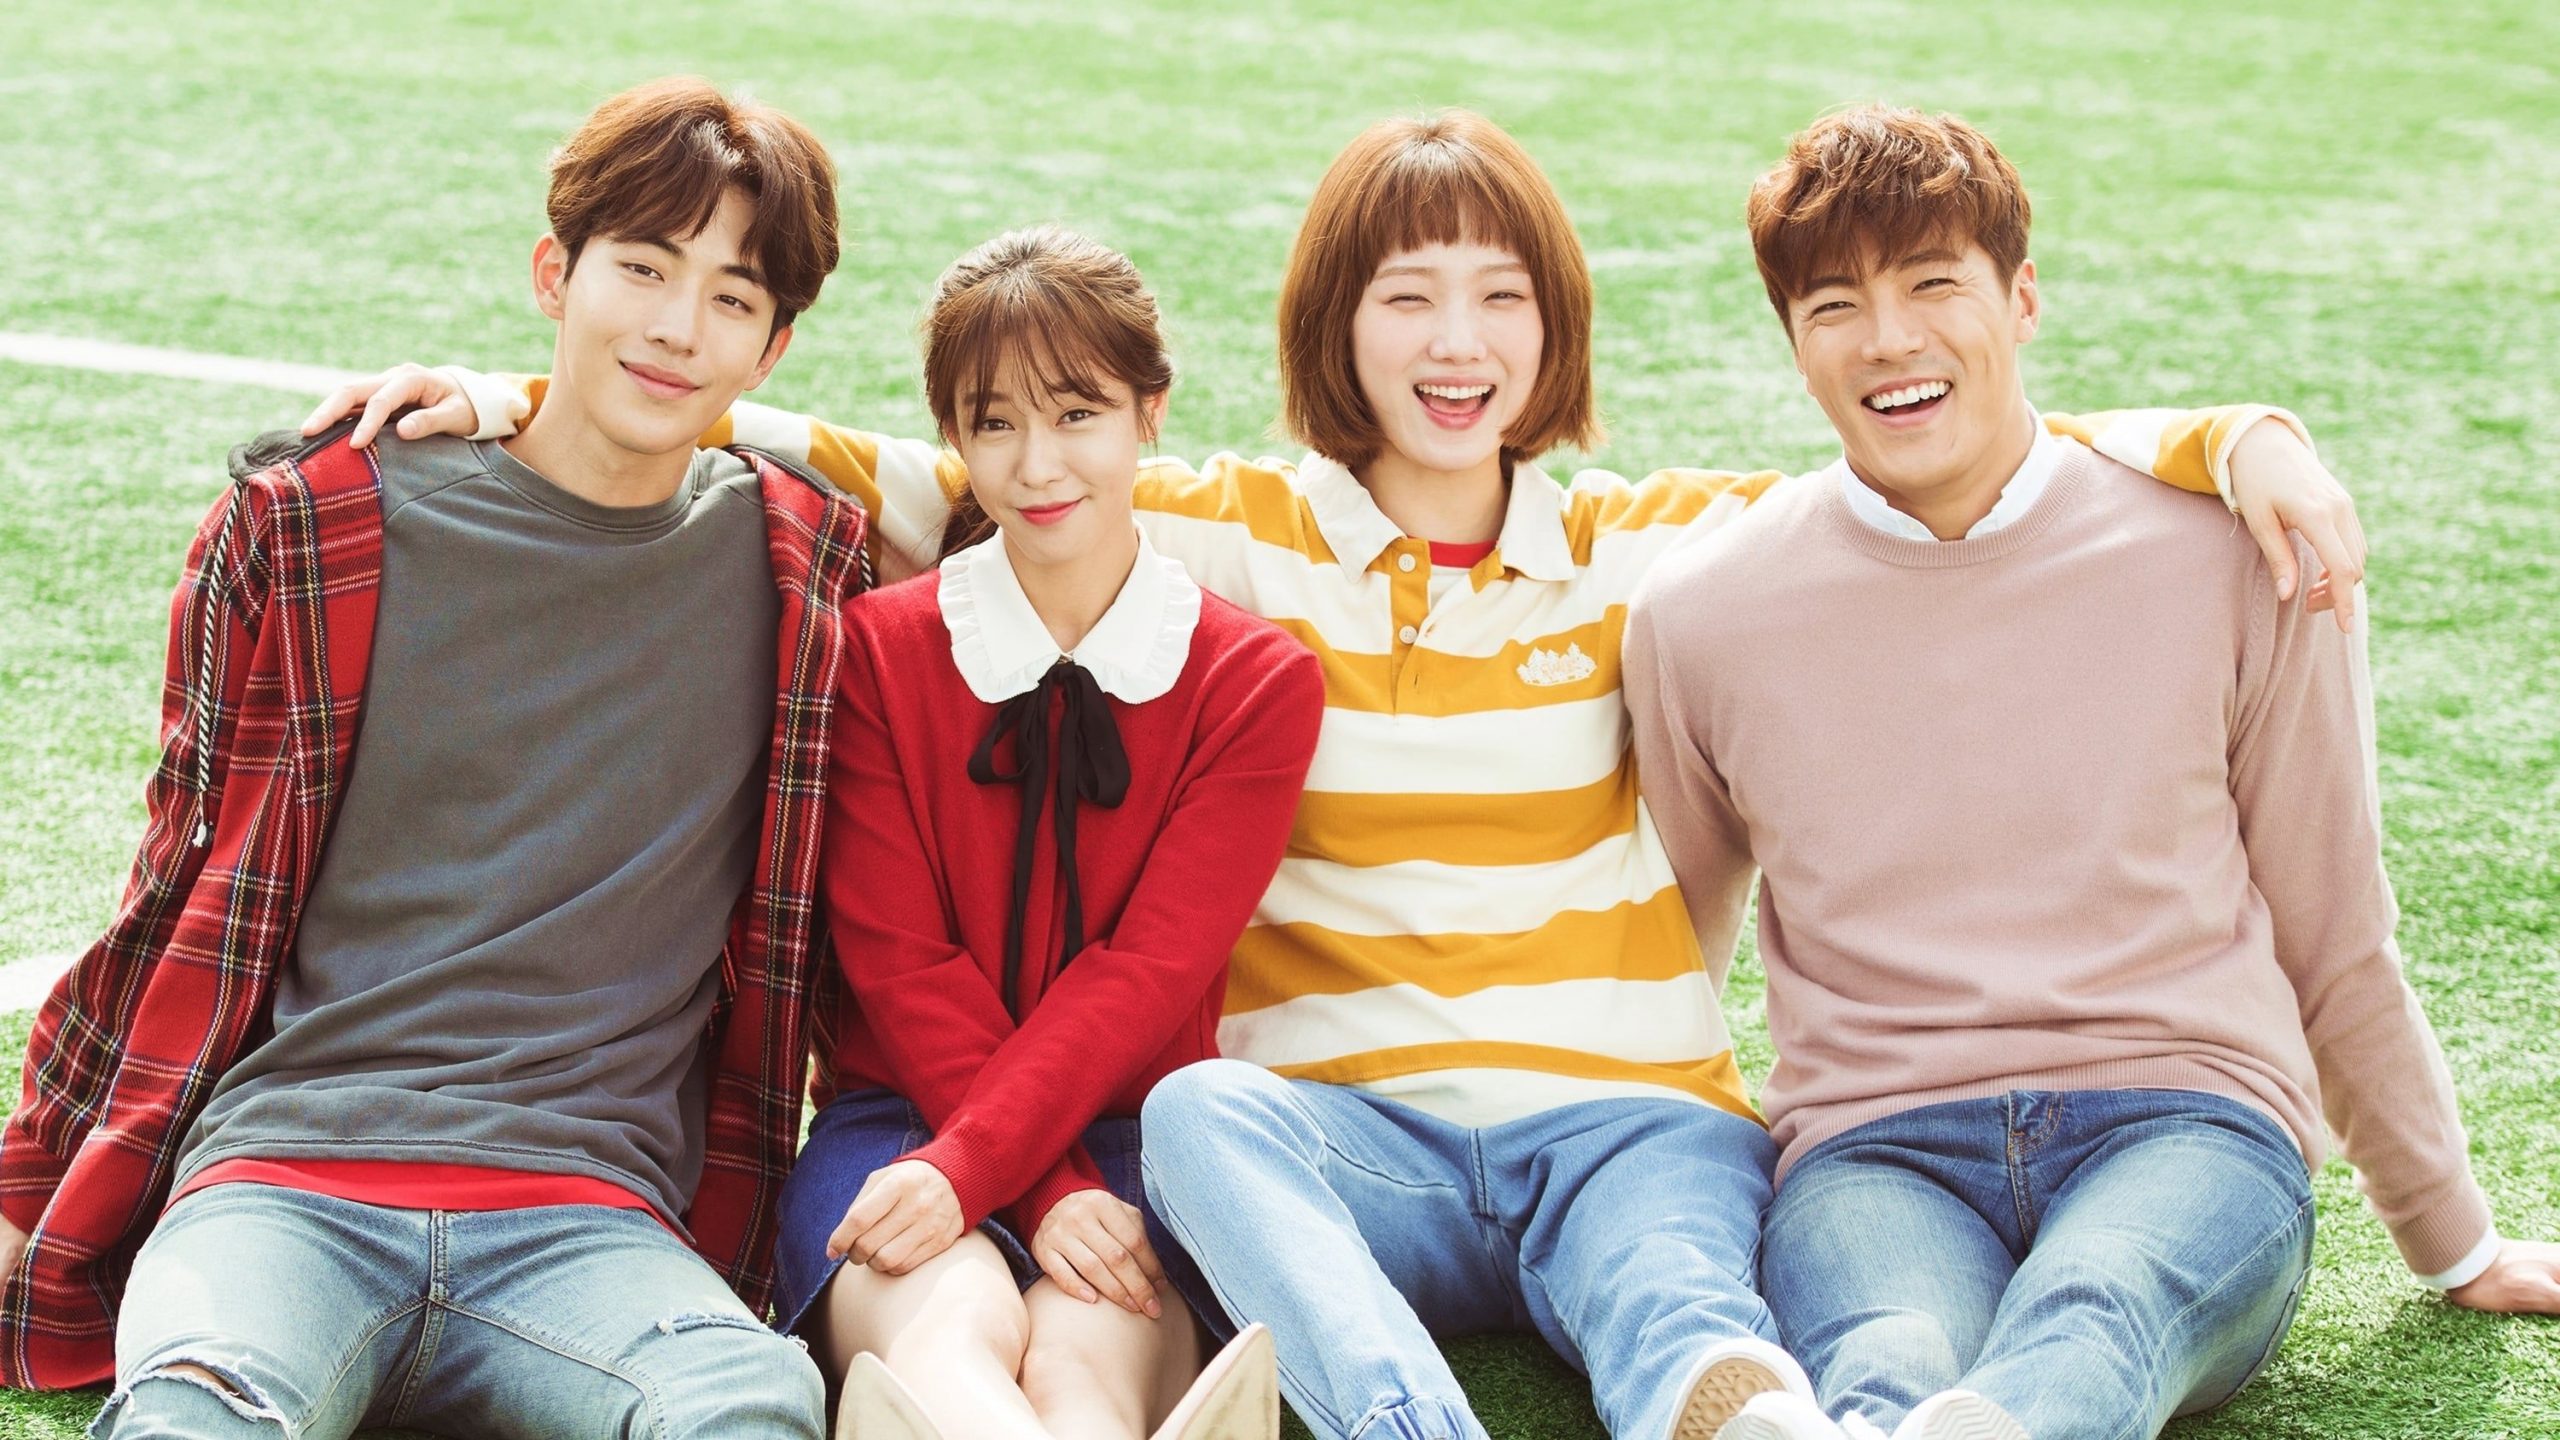 31 Best Korean Drama series to watch 